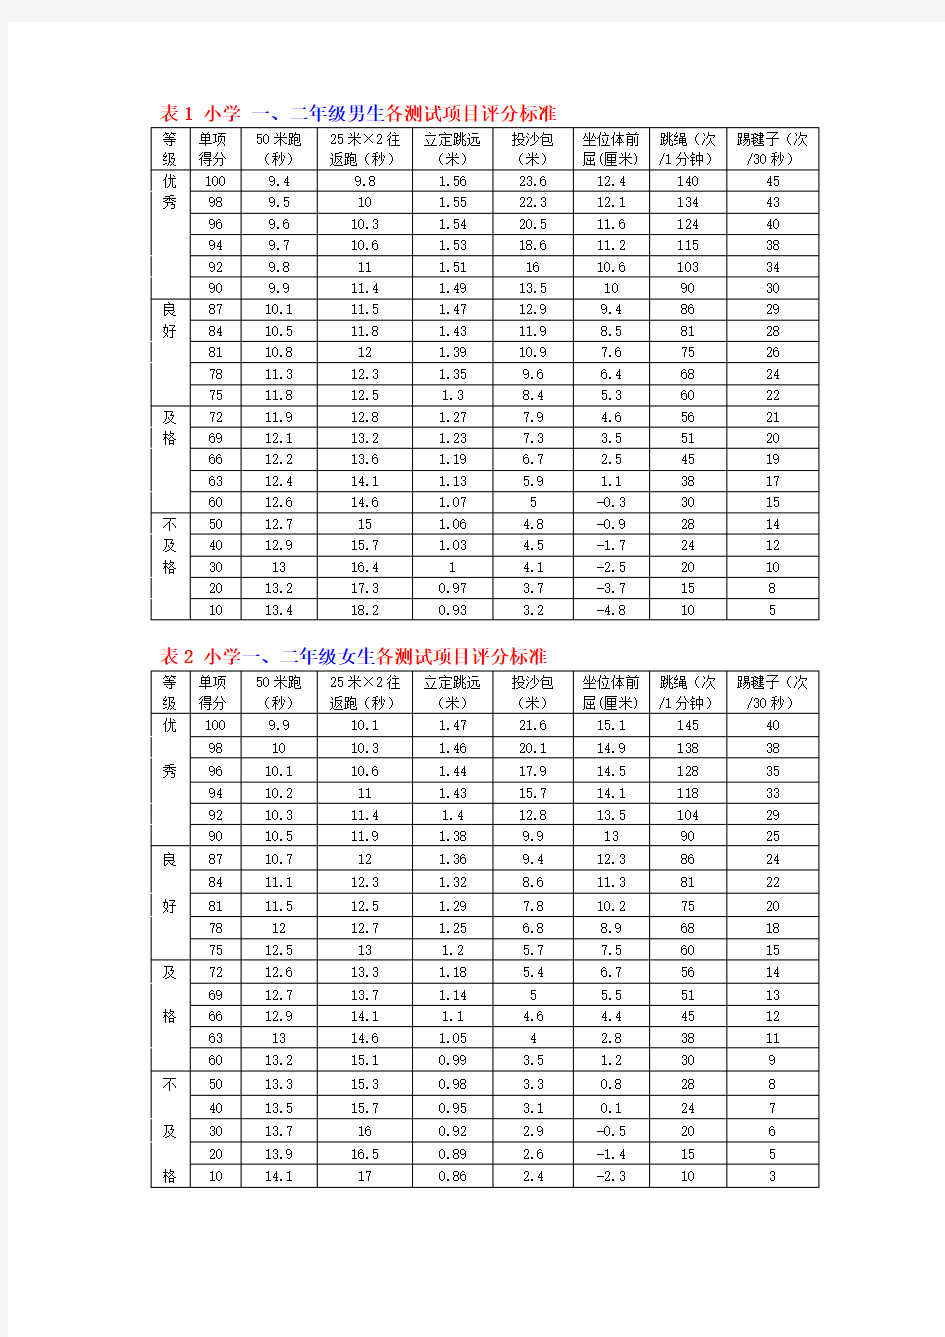 小学生体育达标-身高体重评分标准对照表(2013)